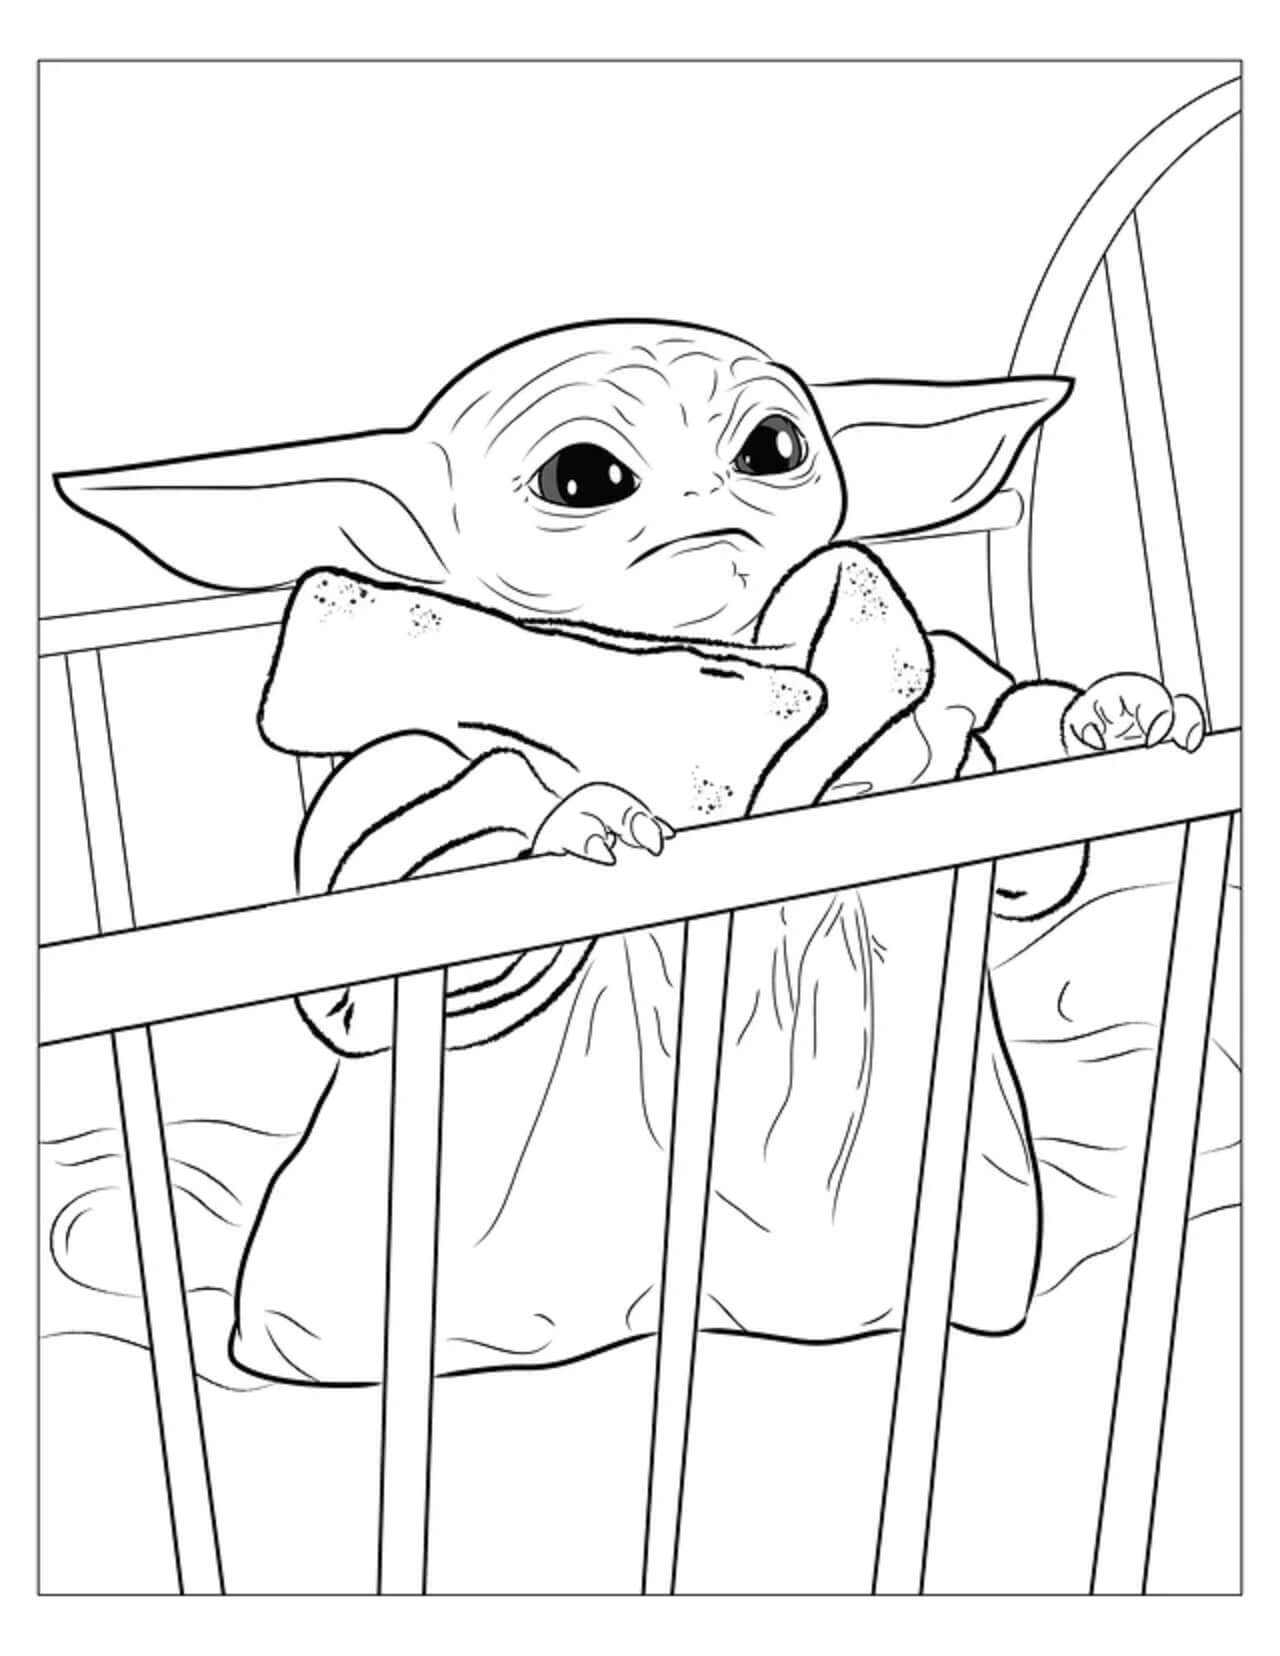 Baby Yoda in de wieg